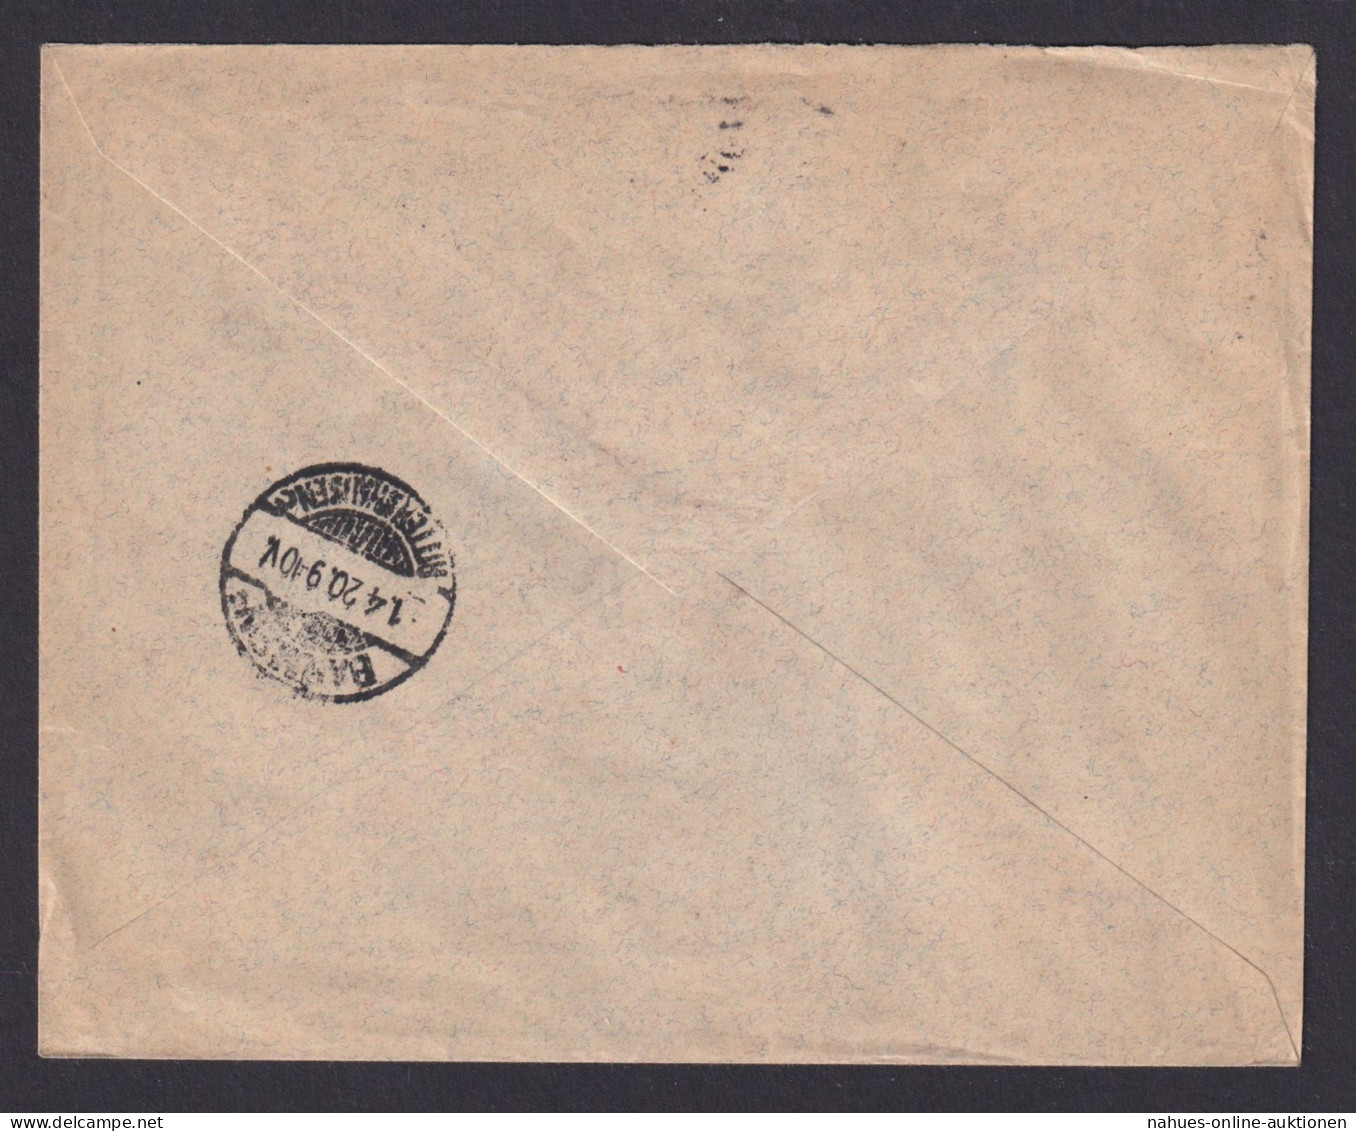 Briefmarken Ungarn R Brief Budapest Wuppertal Barmen Rittershausen 26.3.1920 - Lettres & Documents